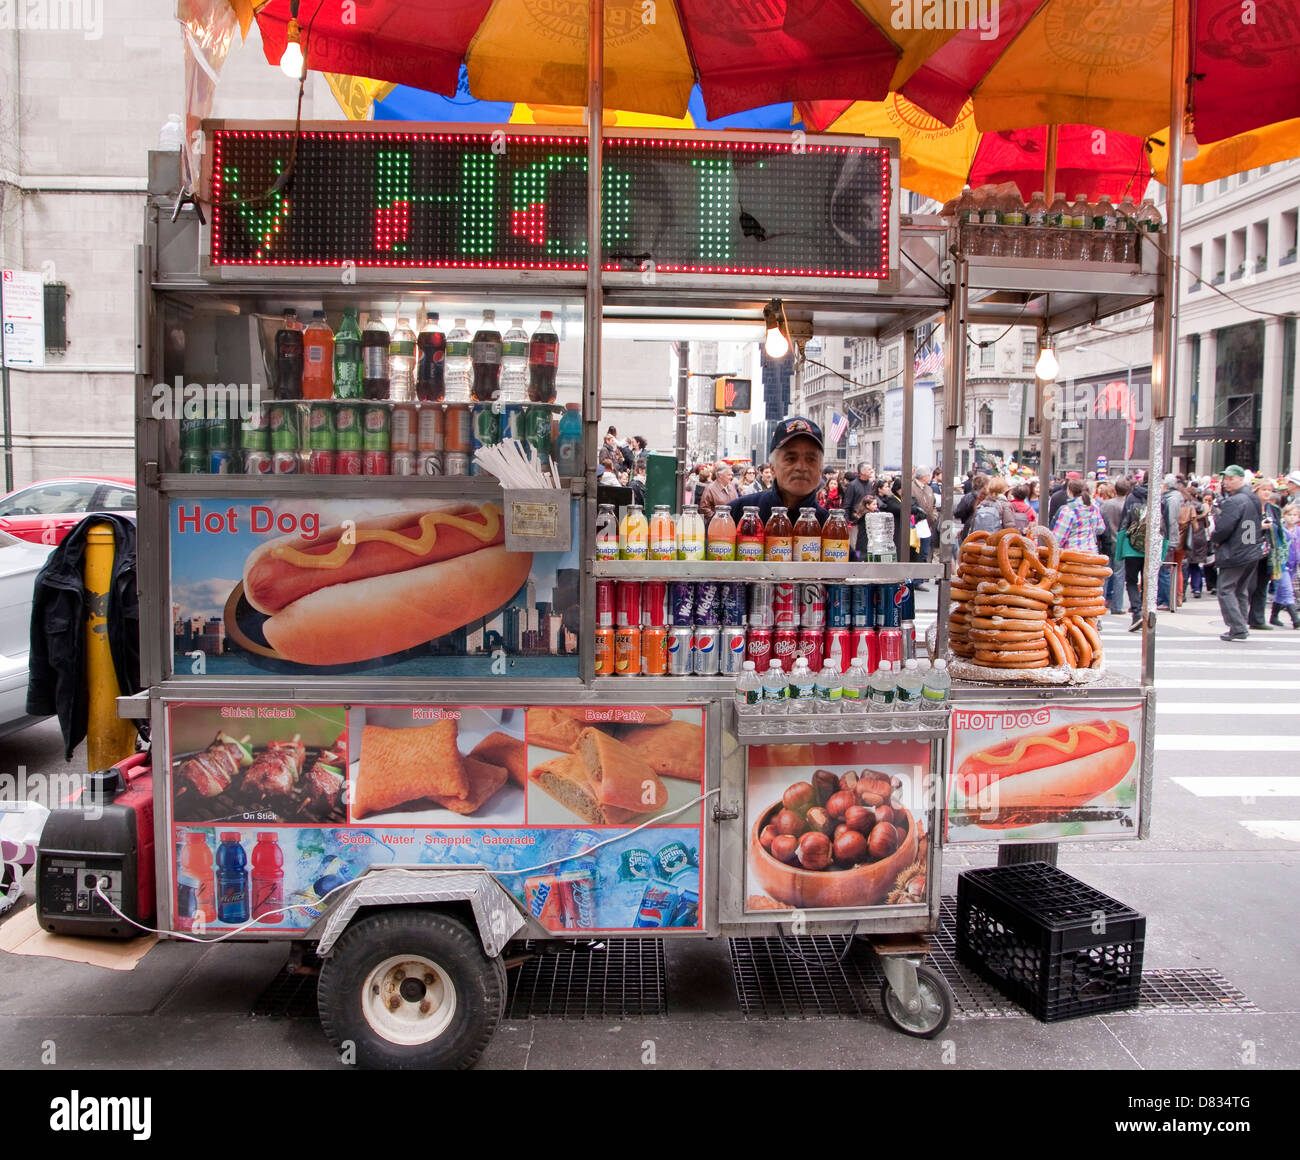 Cucina di strada venditore in midtown Manhattan vendono hot dogs, salatini, knishes, shish kebab, polpette di carne di manzo, soda in un carrello mobile. Foto Stock